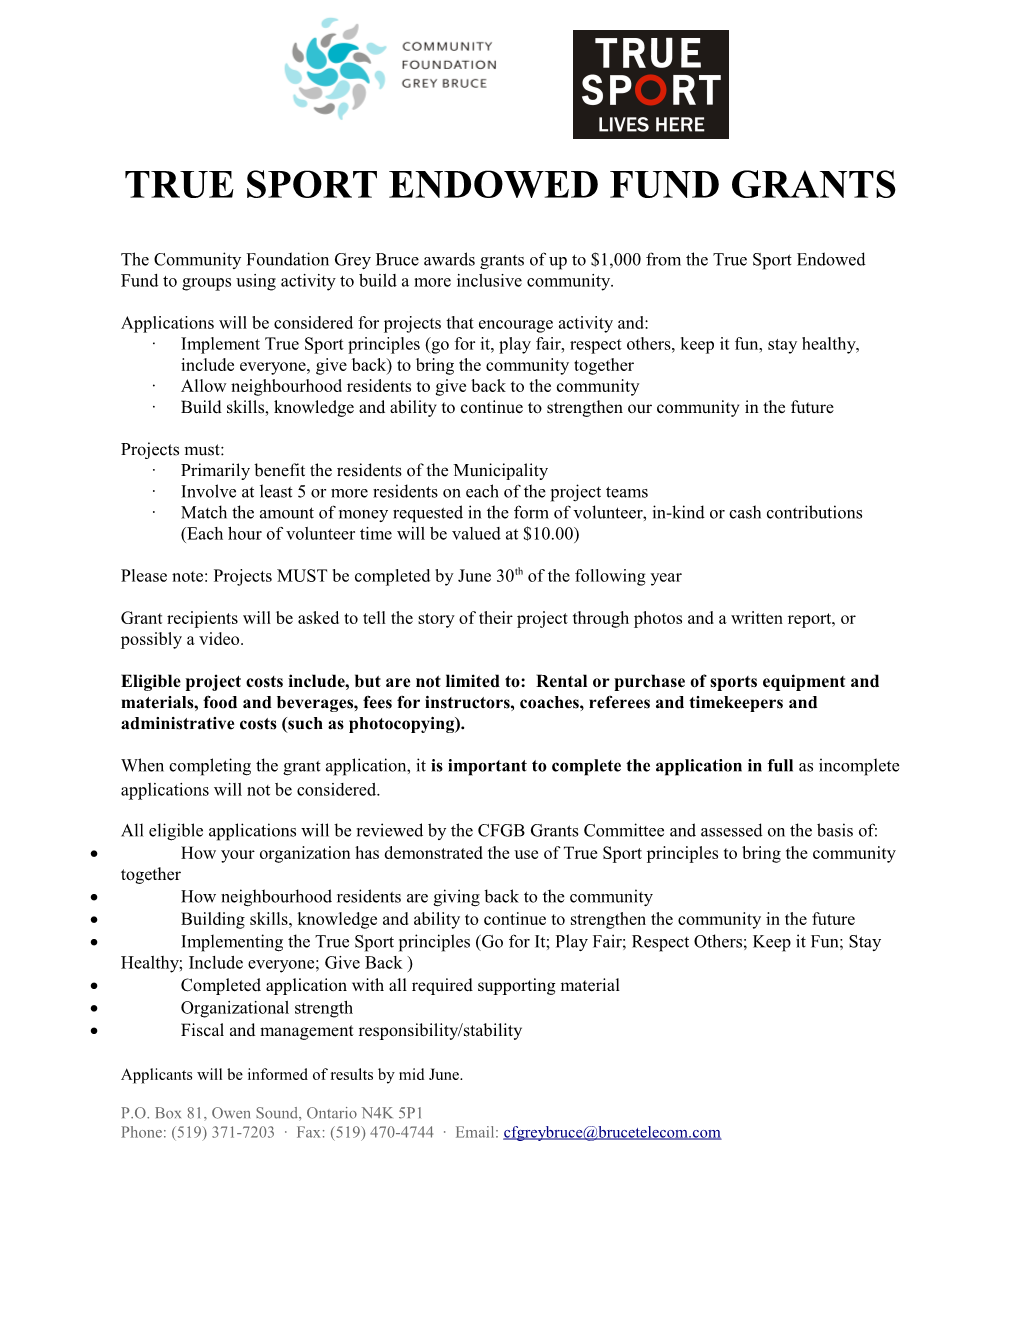 True Sport Endowed Fund Grants